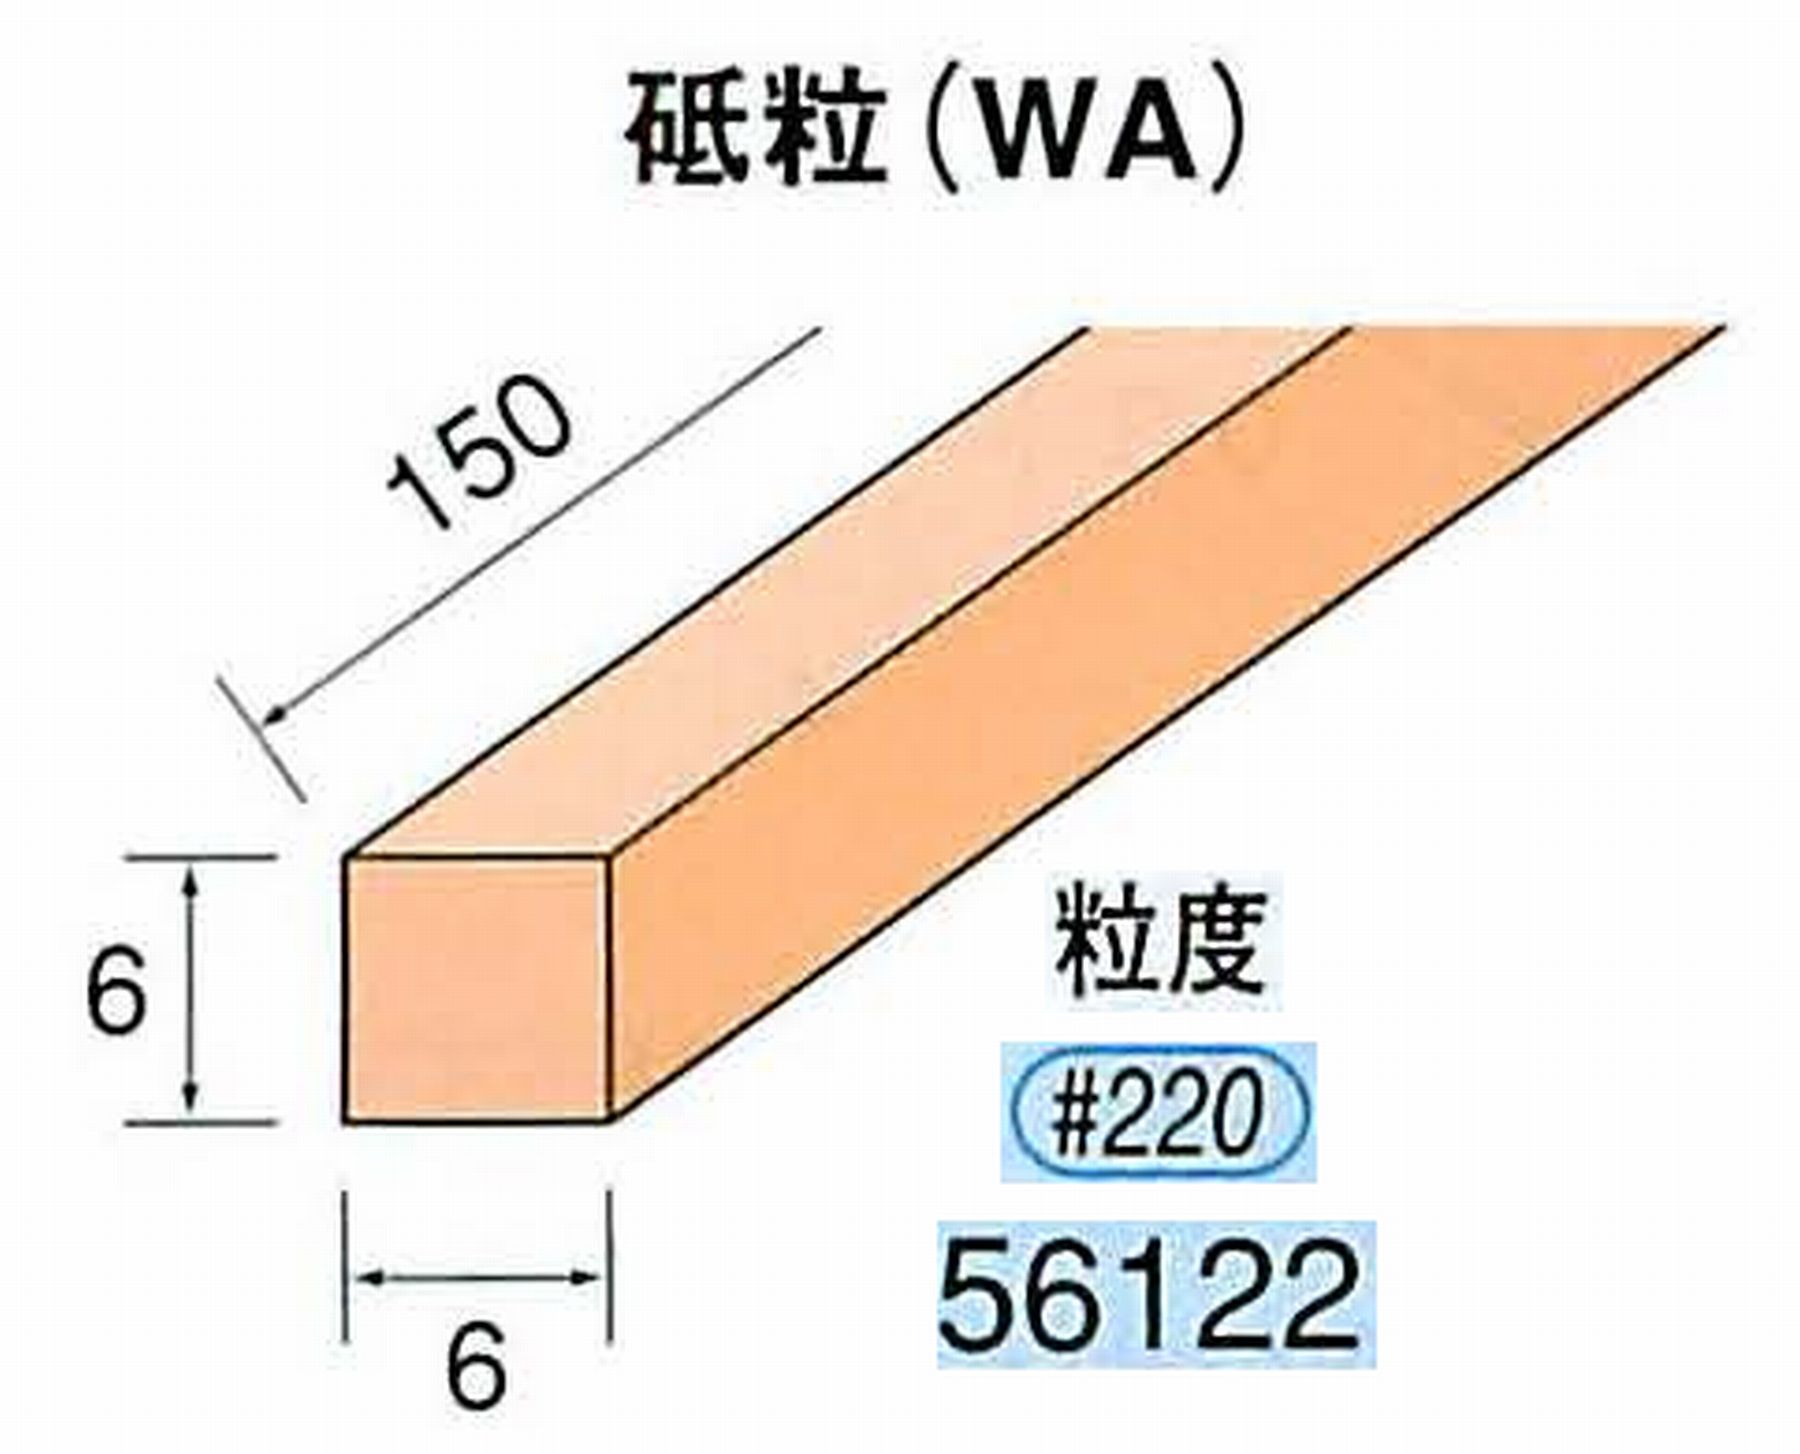 ナカニシ/NAKANISHI スティック砥石 スタンダードシリーズ 砥粒(WA) 56122